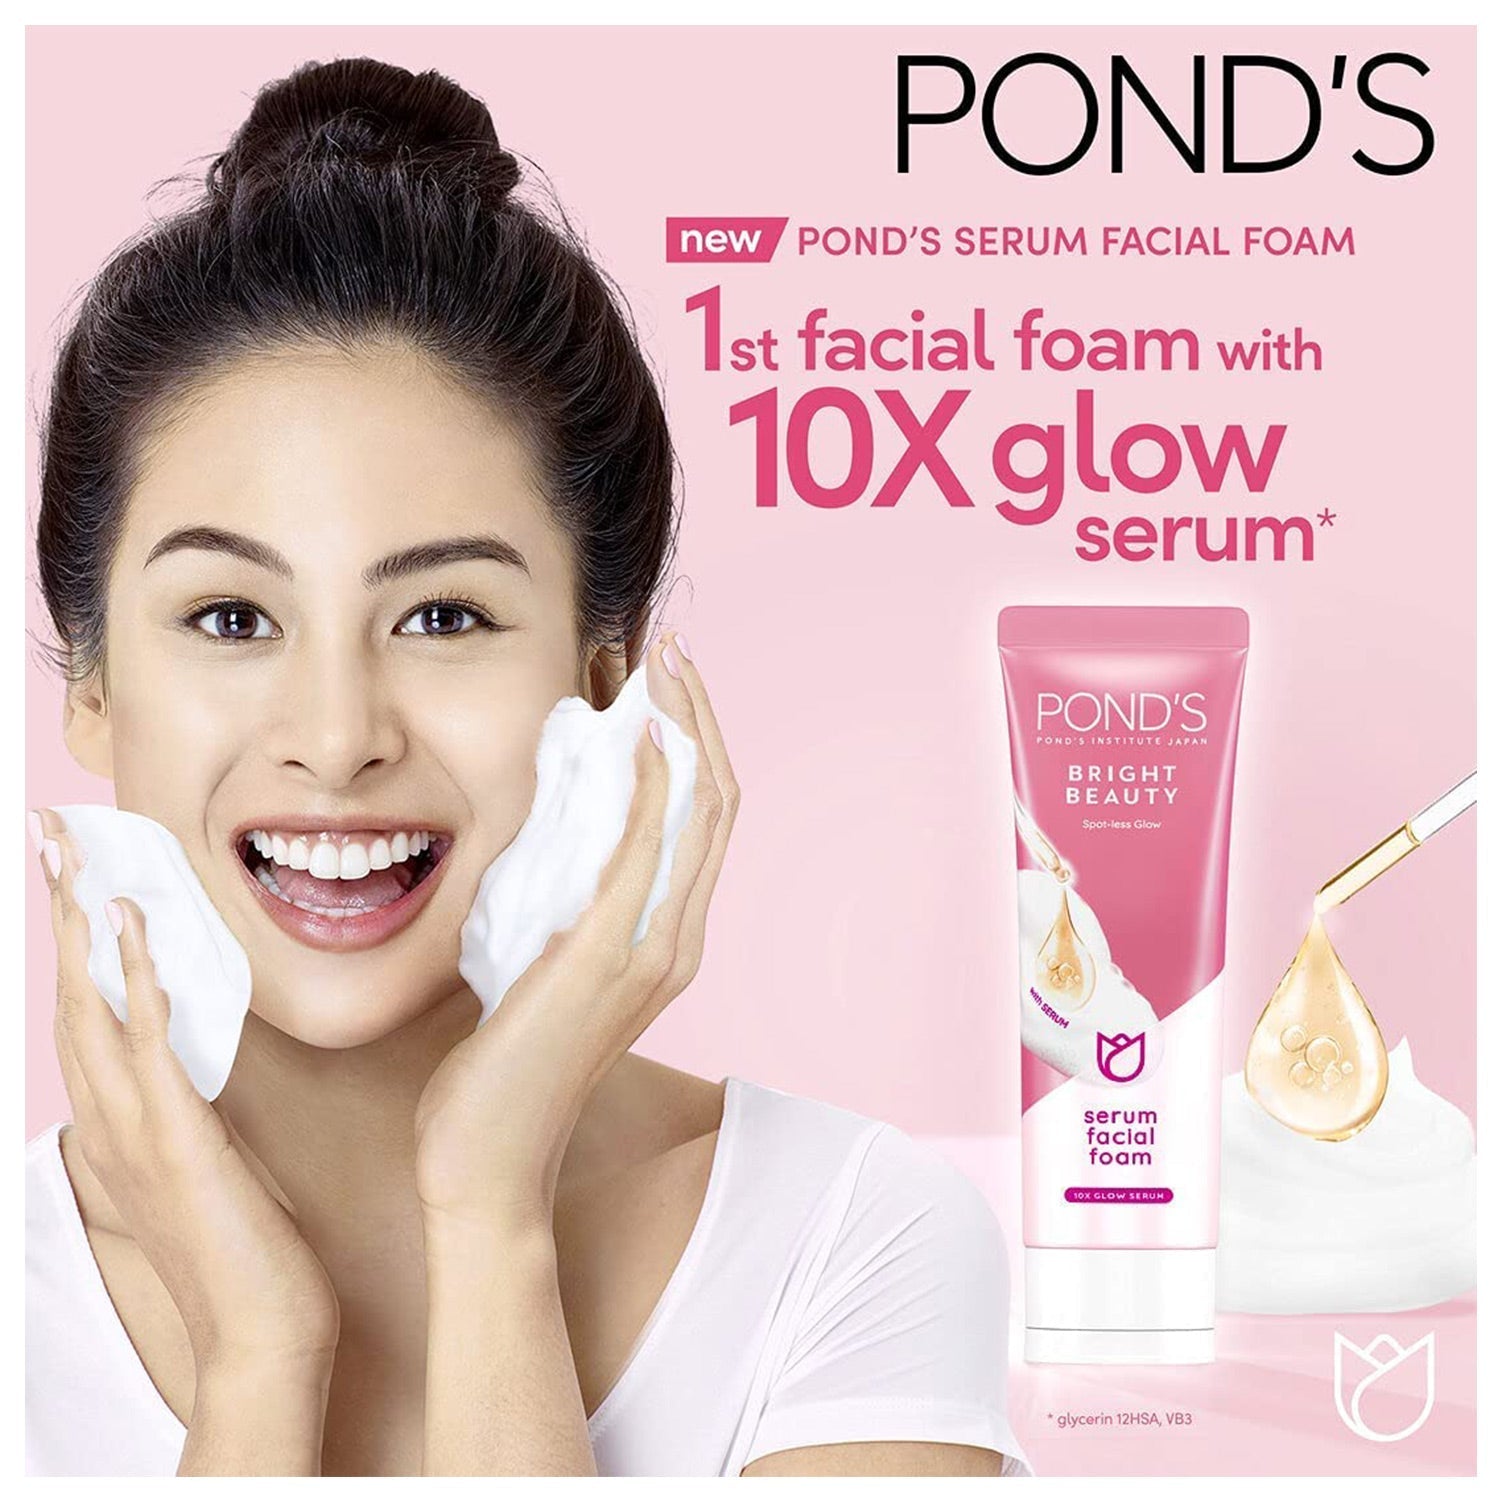 Ponds bright beauty serum facial foam 100 g